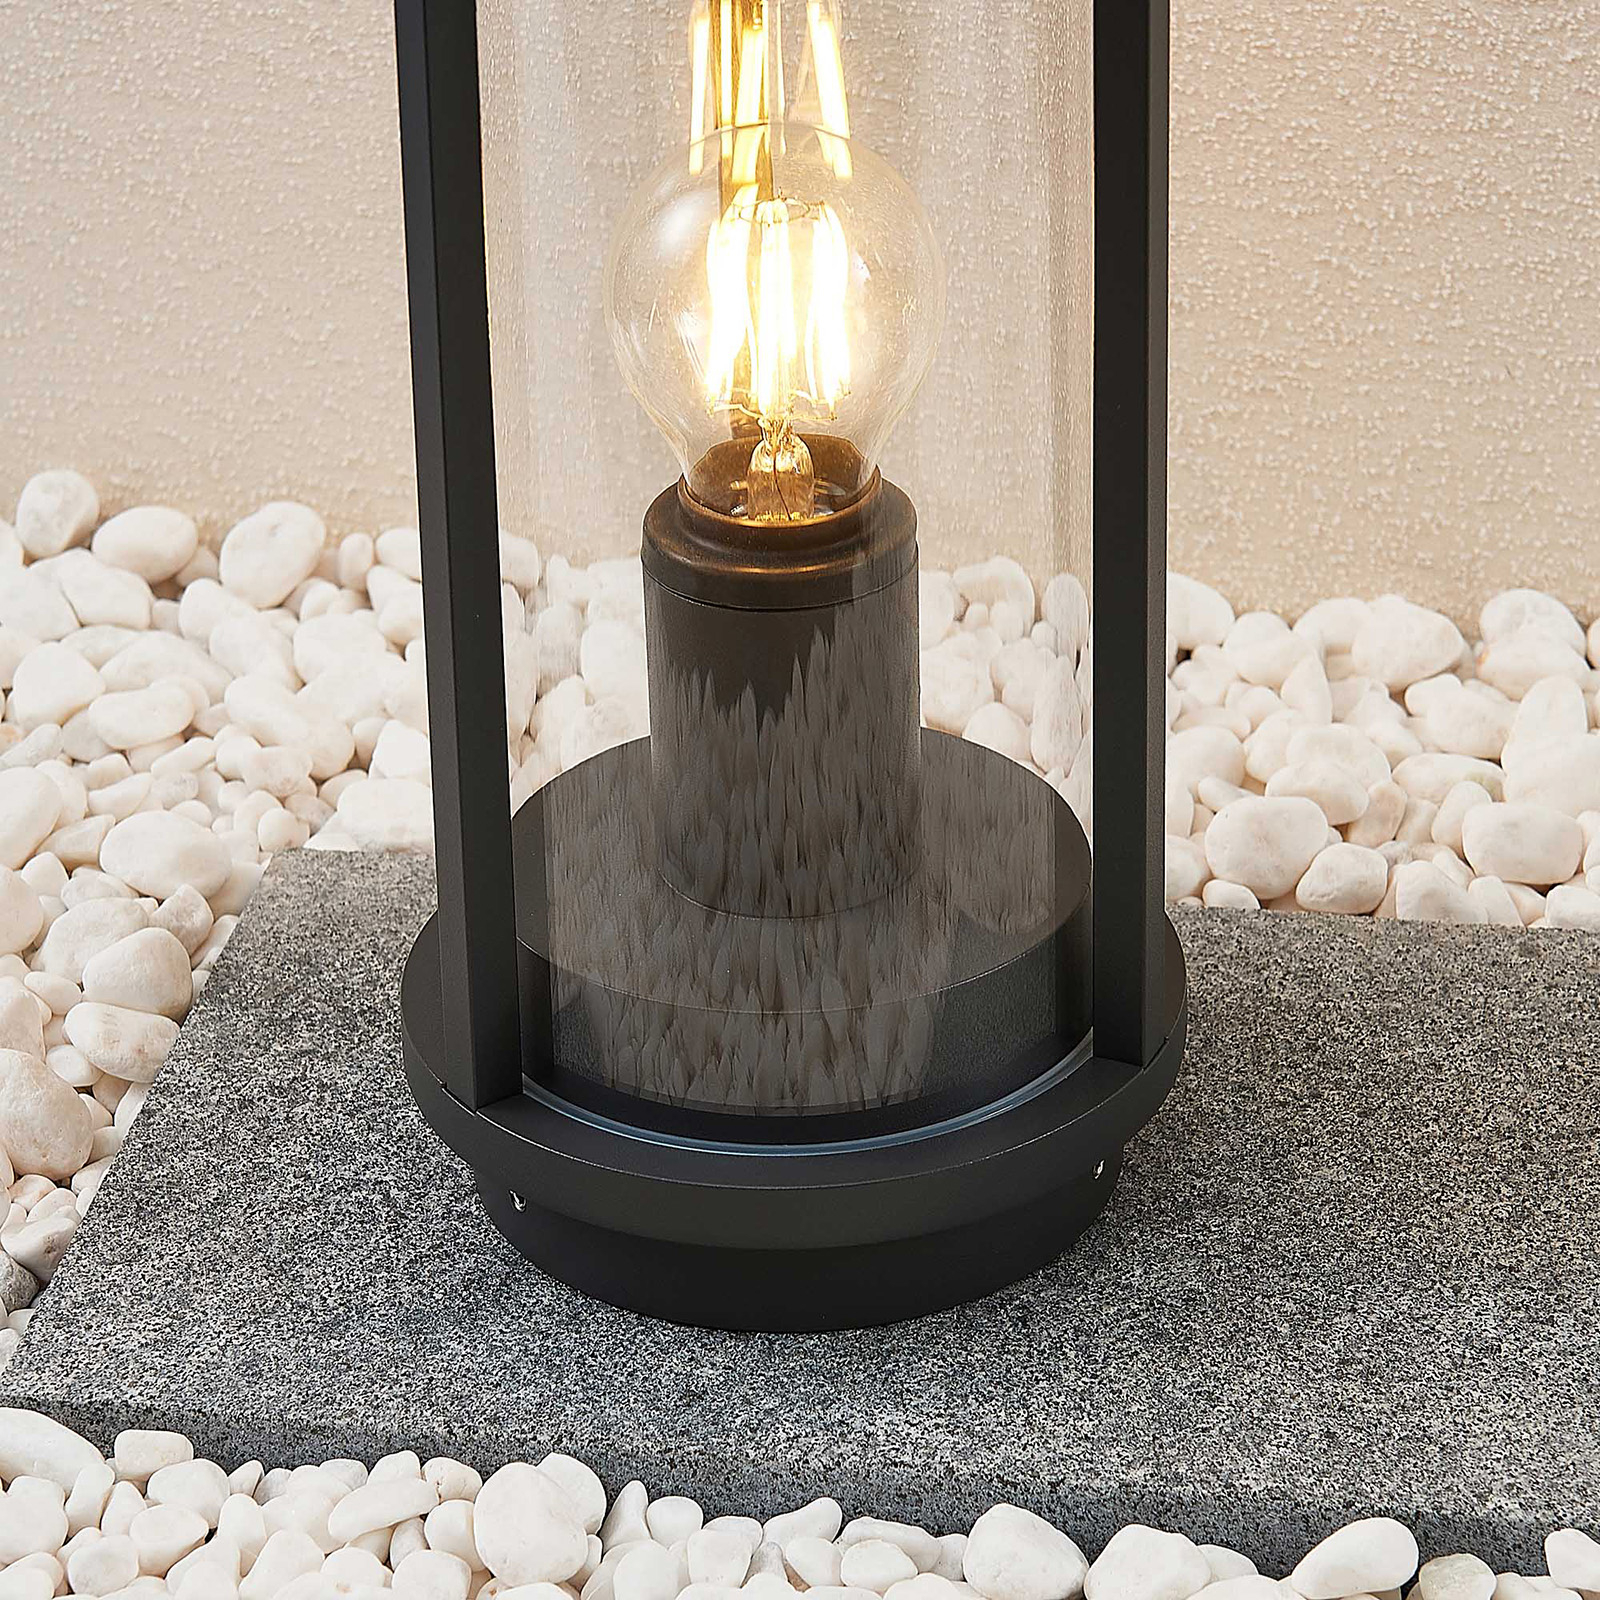 Lucande Emmeline talapzati lámpa, 34 cm magas